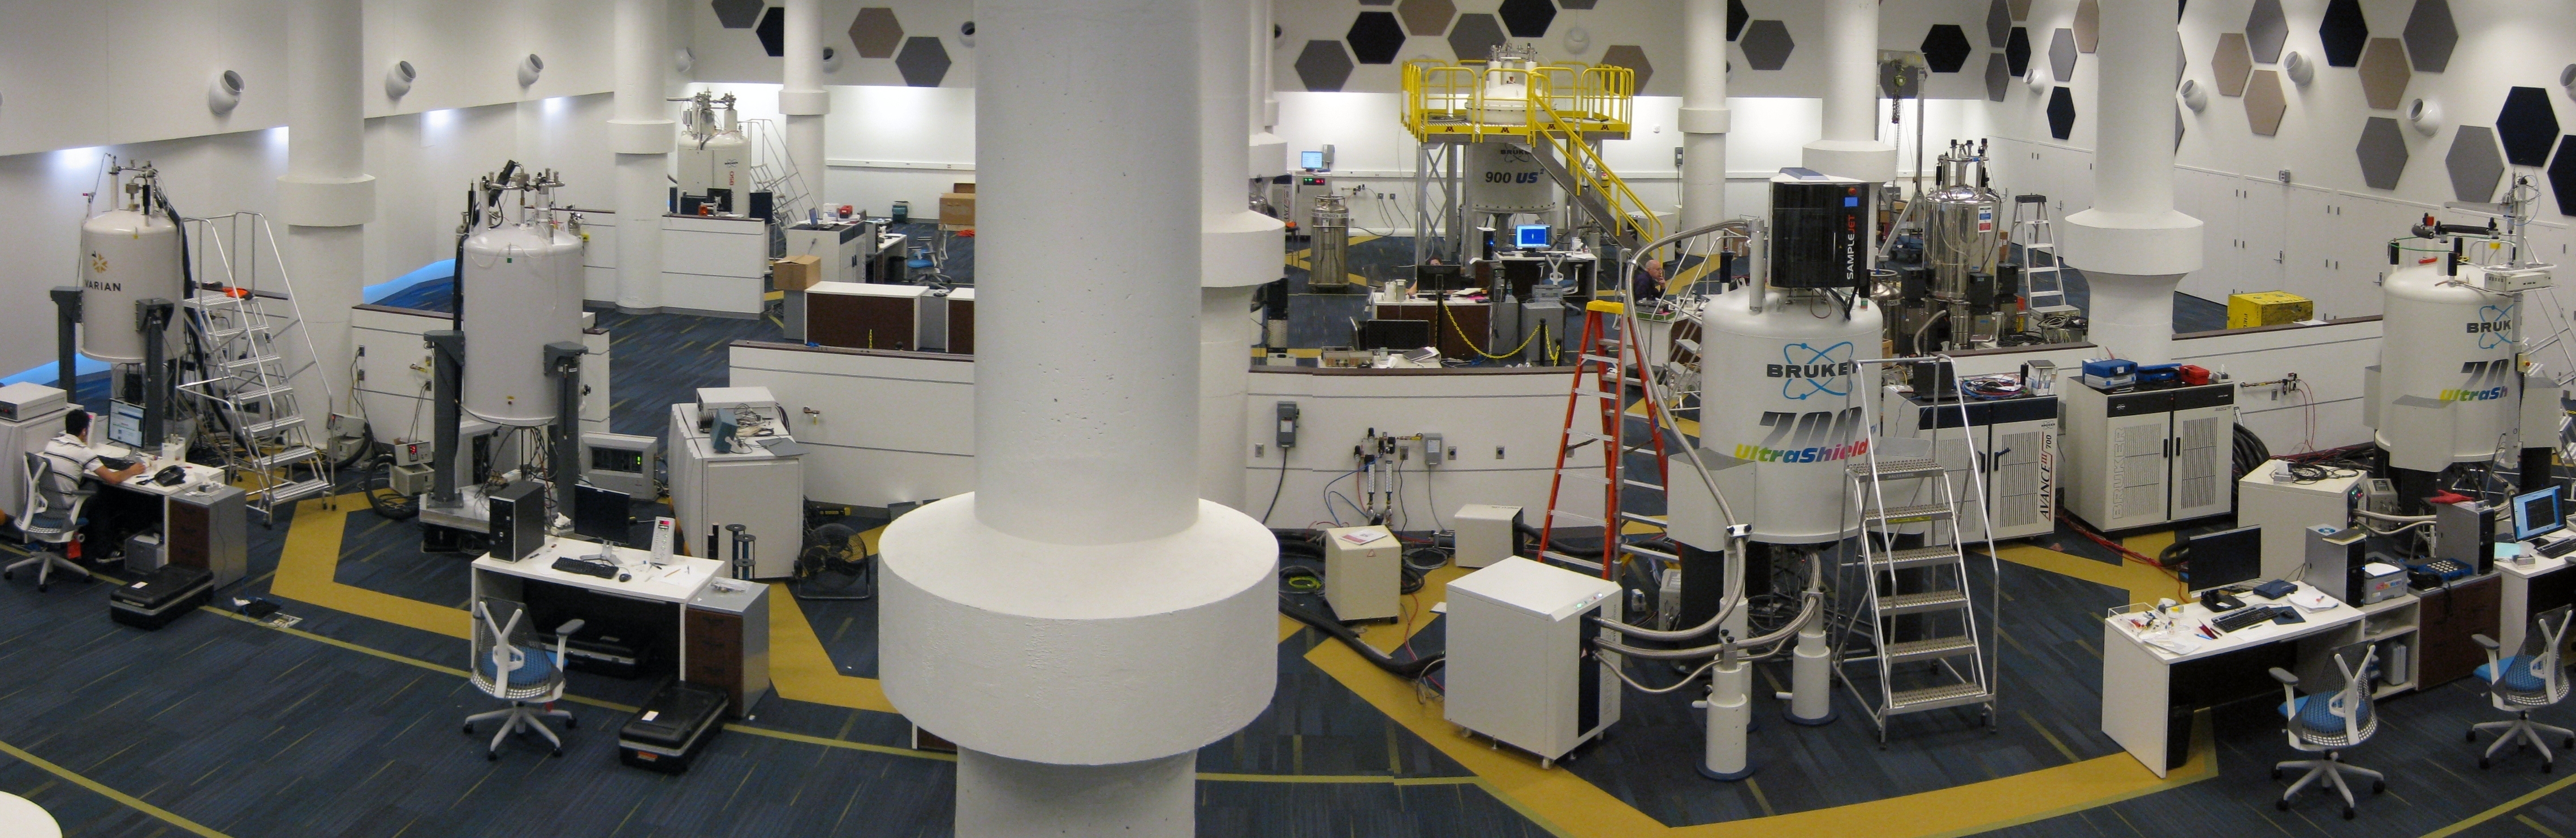 NMR lab panorama